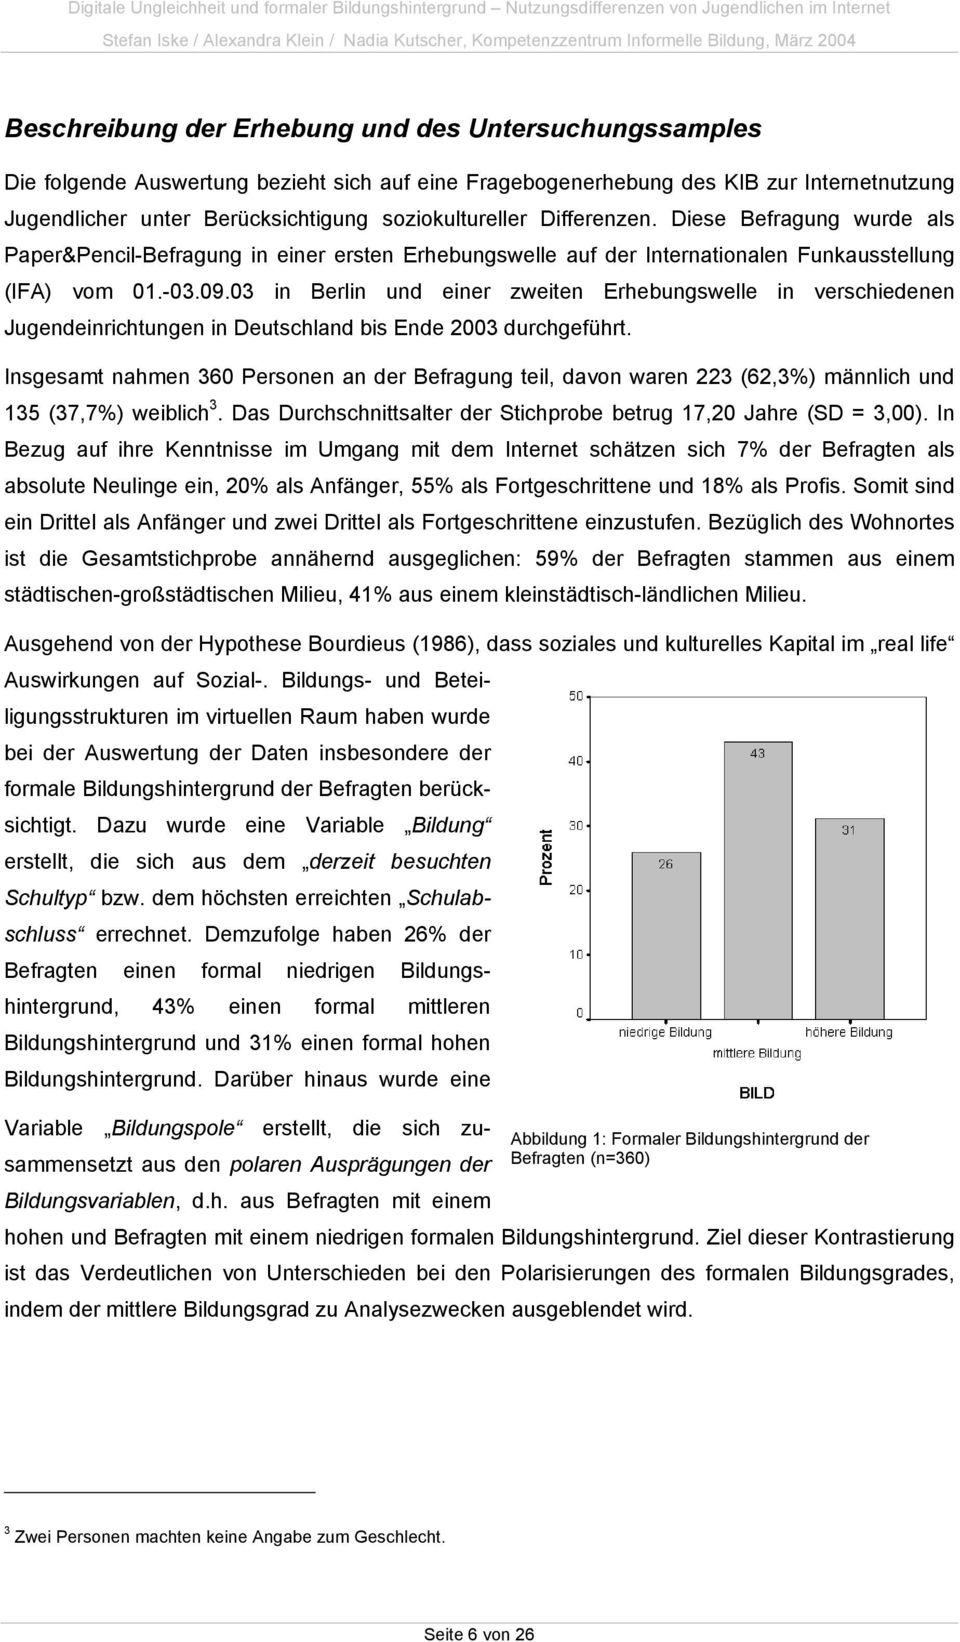 03 in Berlin und einer zweiten Erhebungswelle in verschiedenen Jugendeinrichtungen in Deutschland bis Ende 2003 durchgeführt.